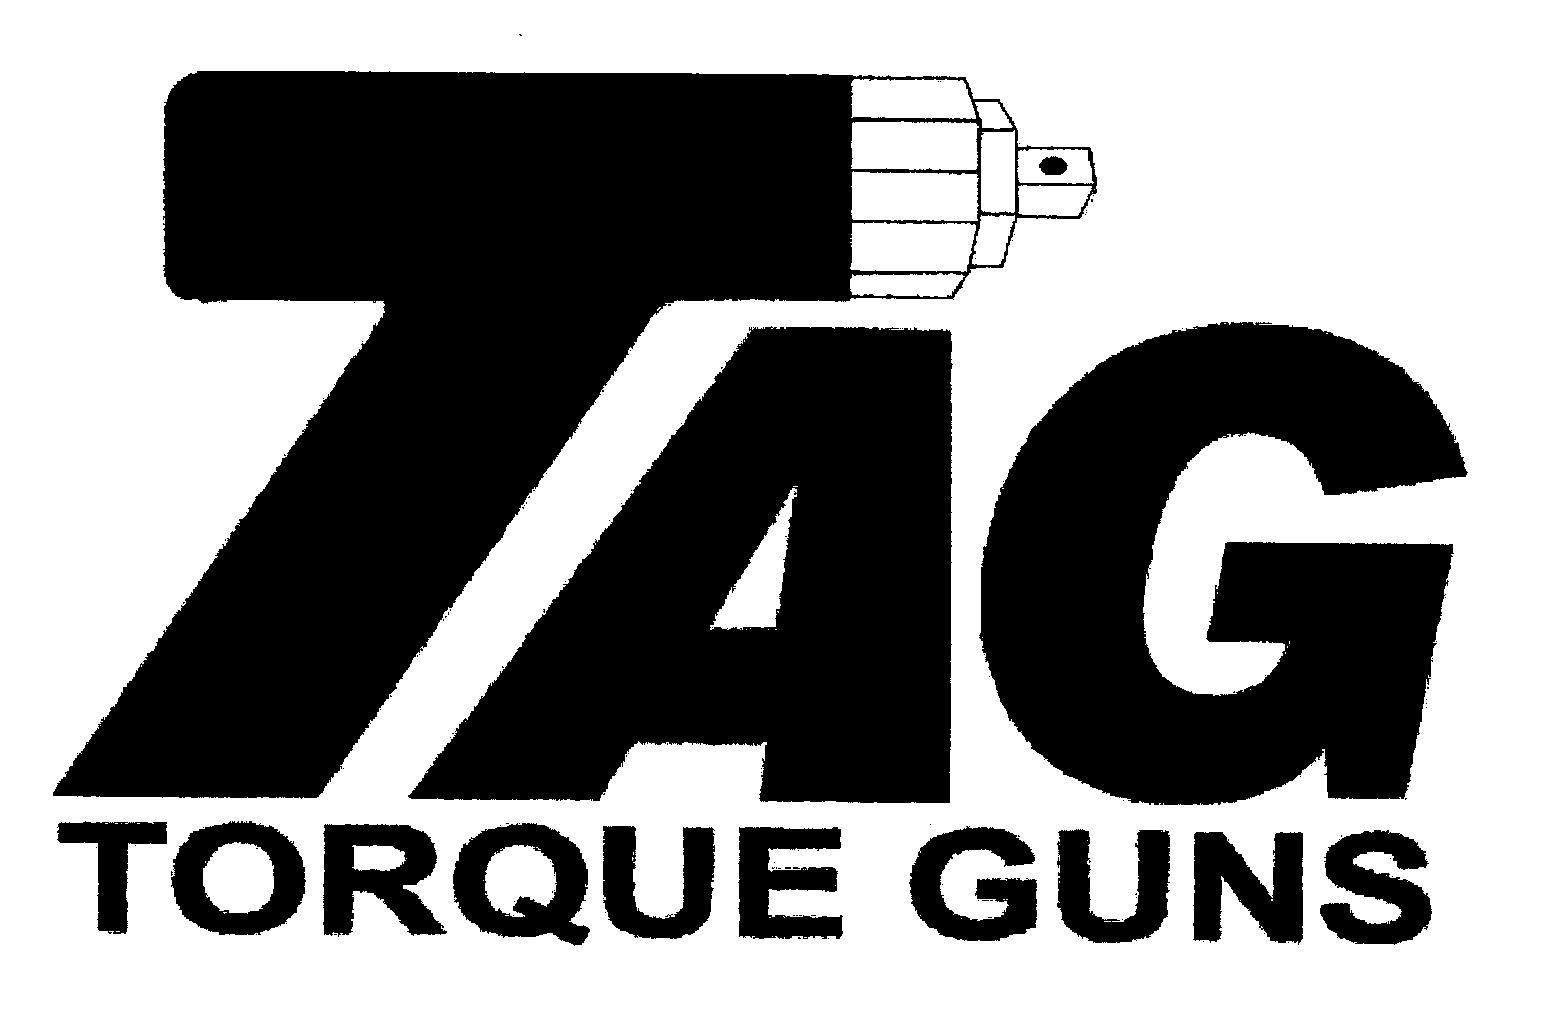  TAG TORQUE GUNS